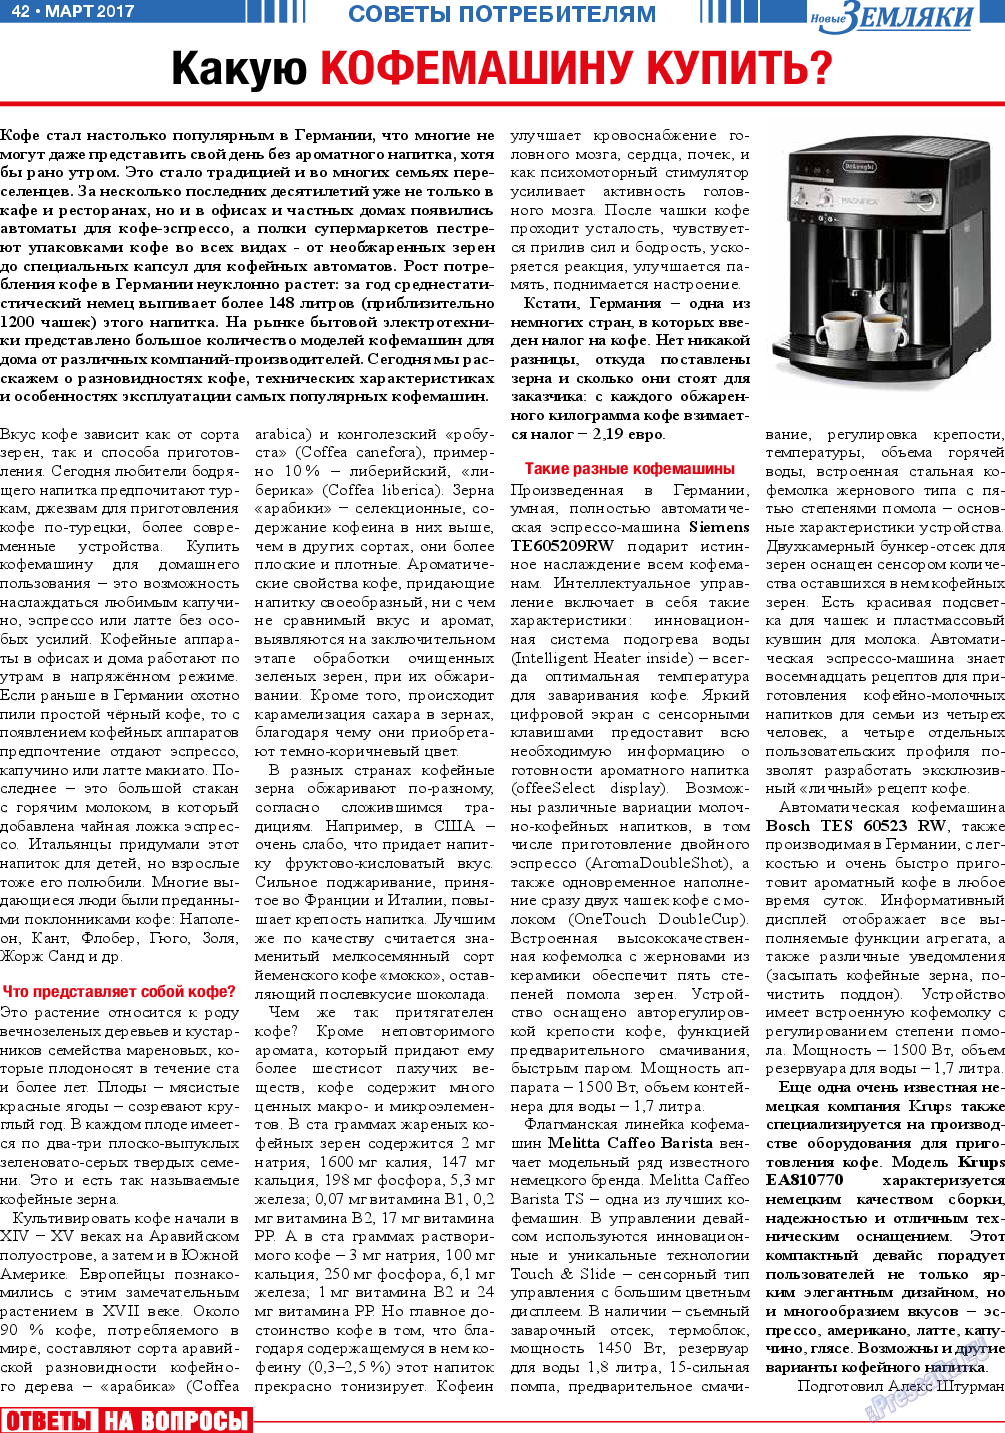 Новые Земляки, газета. 2017 №3 стр.42